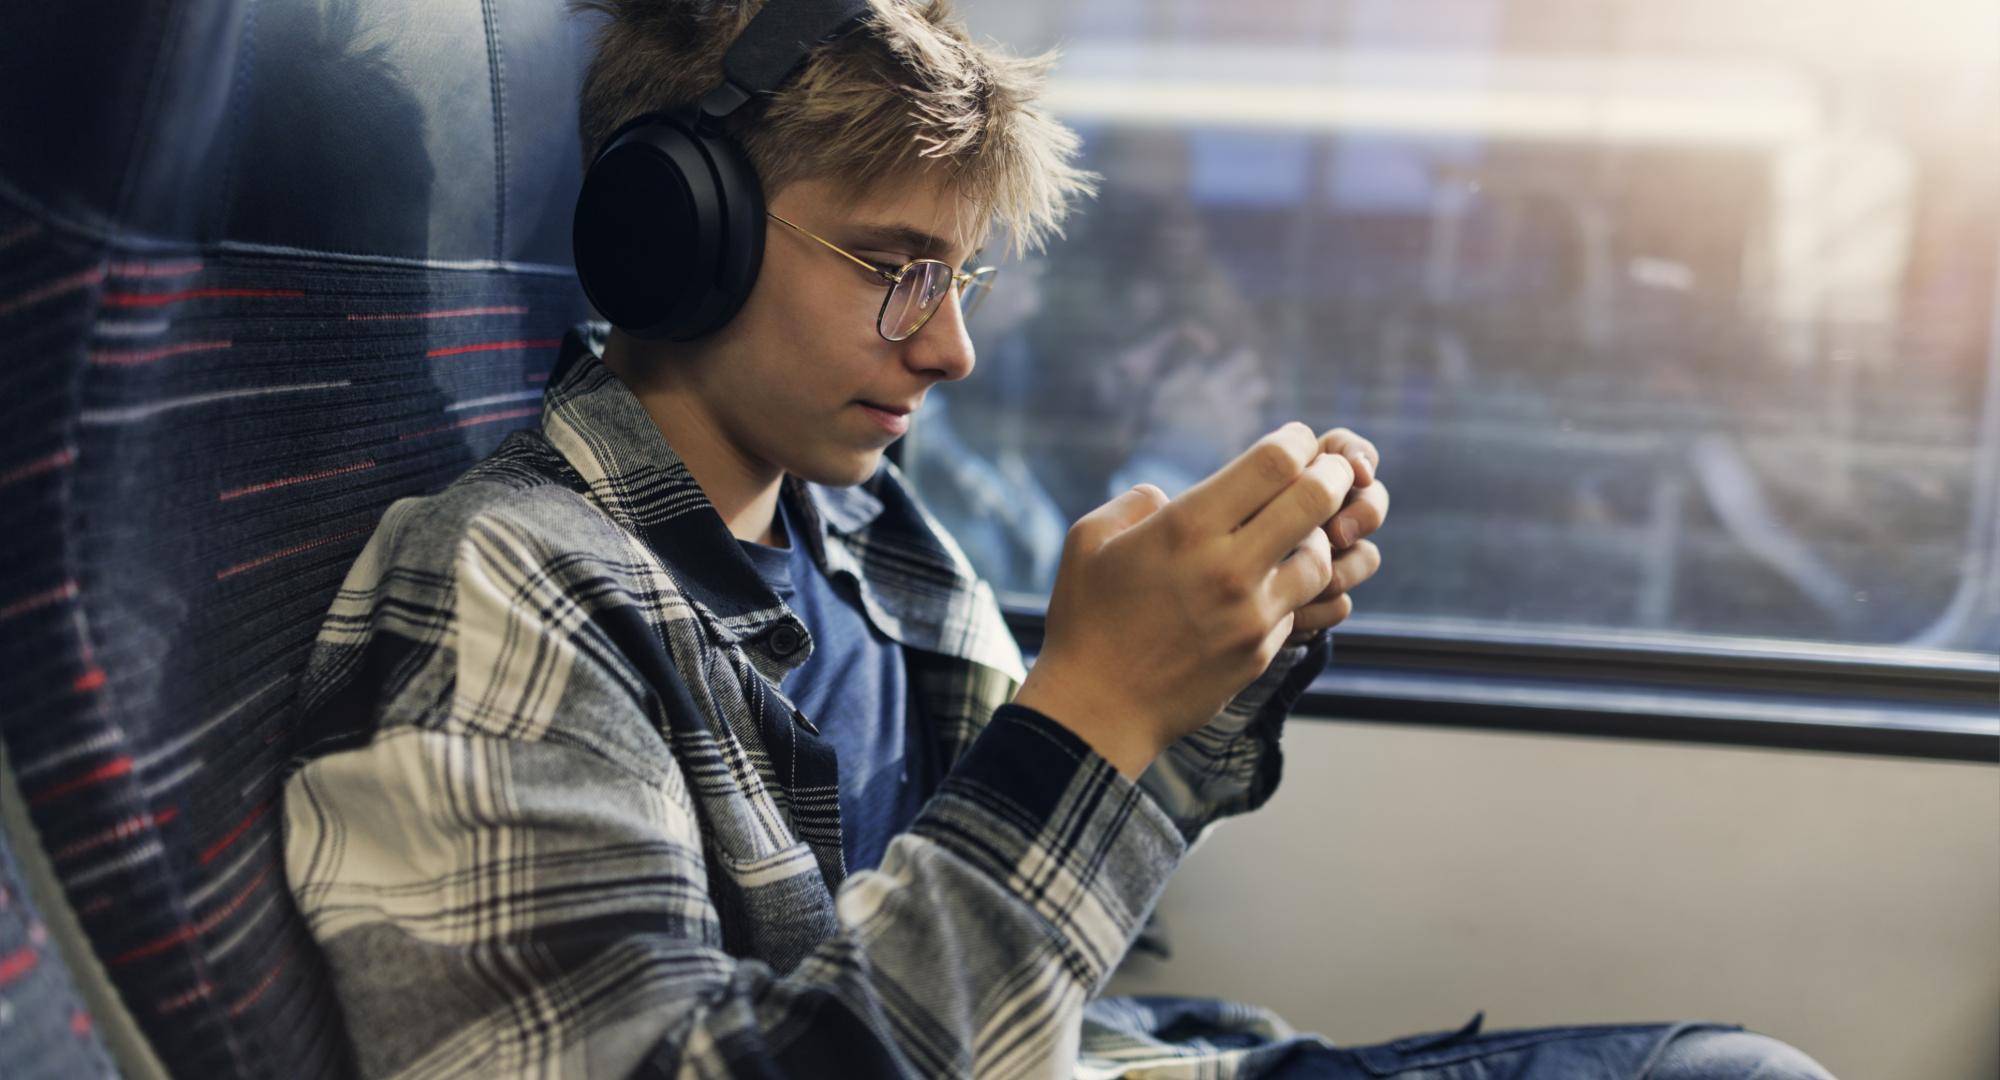 Teenage boy travelling by modern train